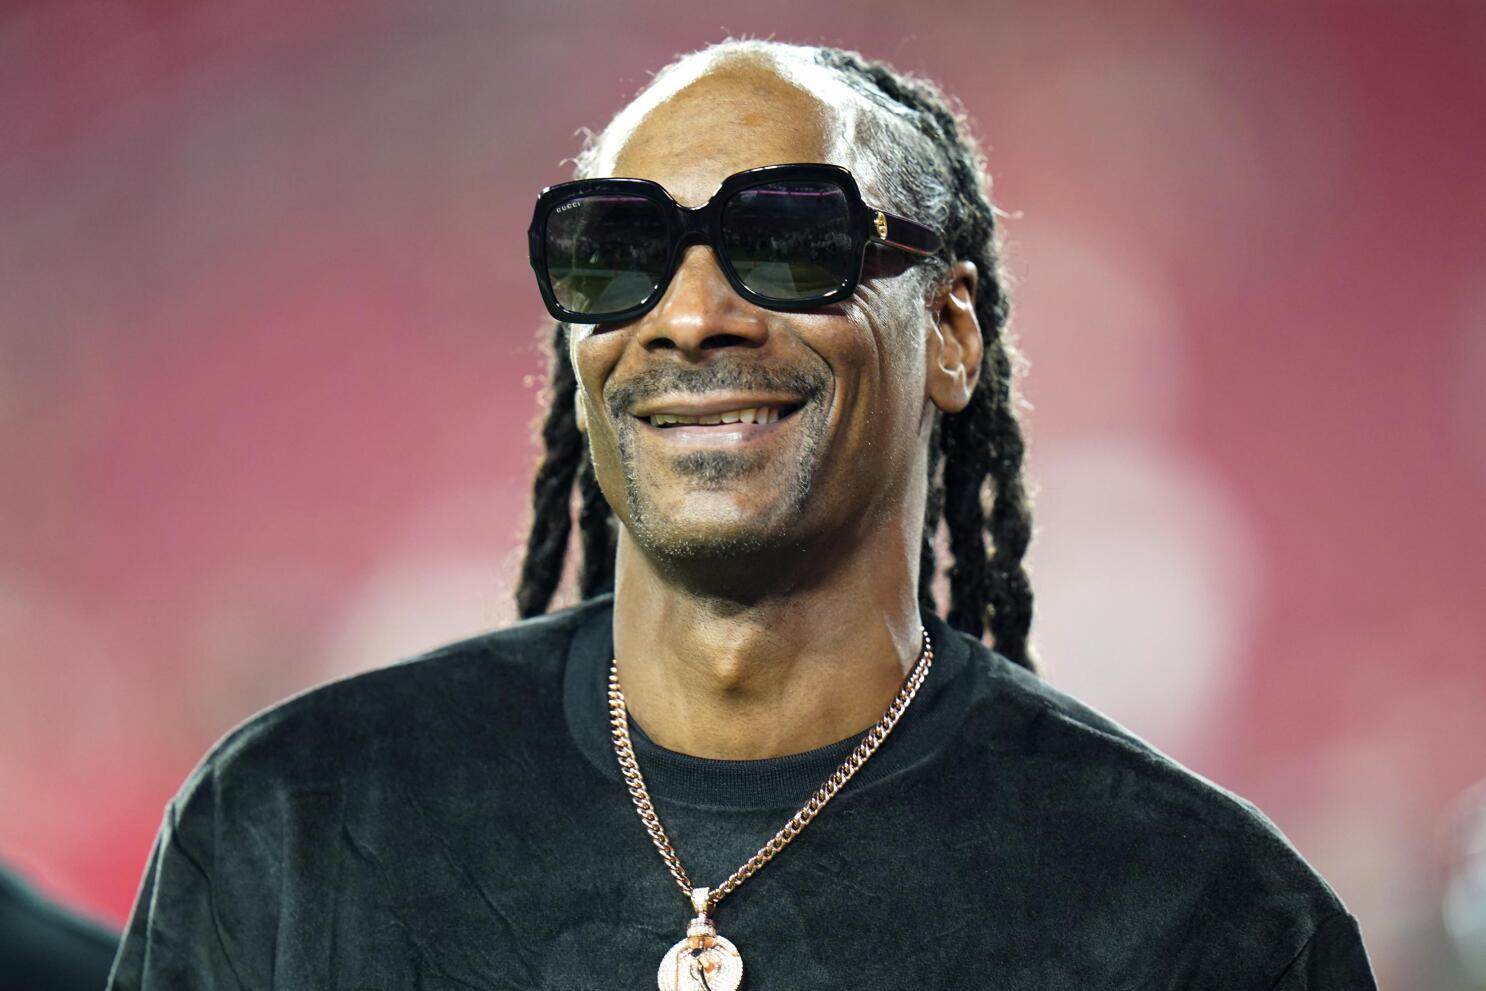 Snoop Dogg calls Super Bowl halftime show 'dream come true